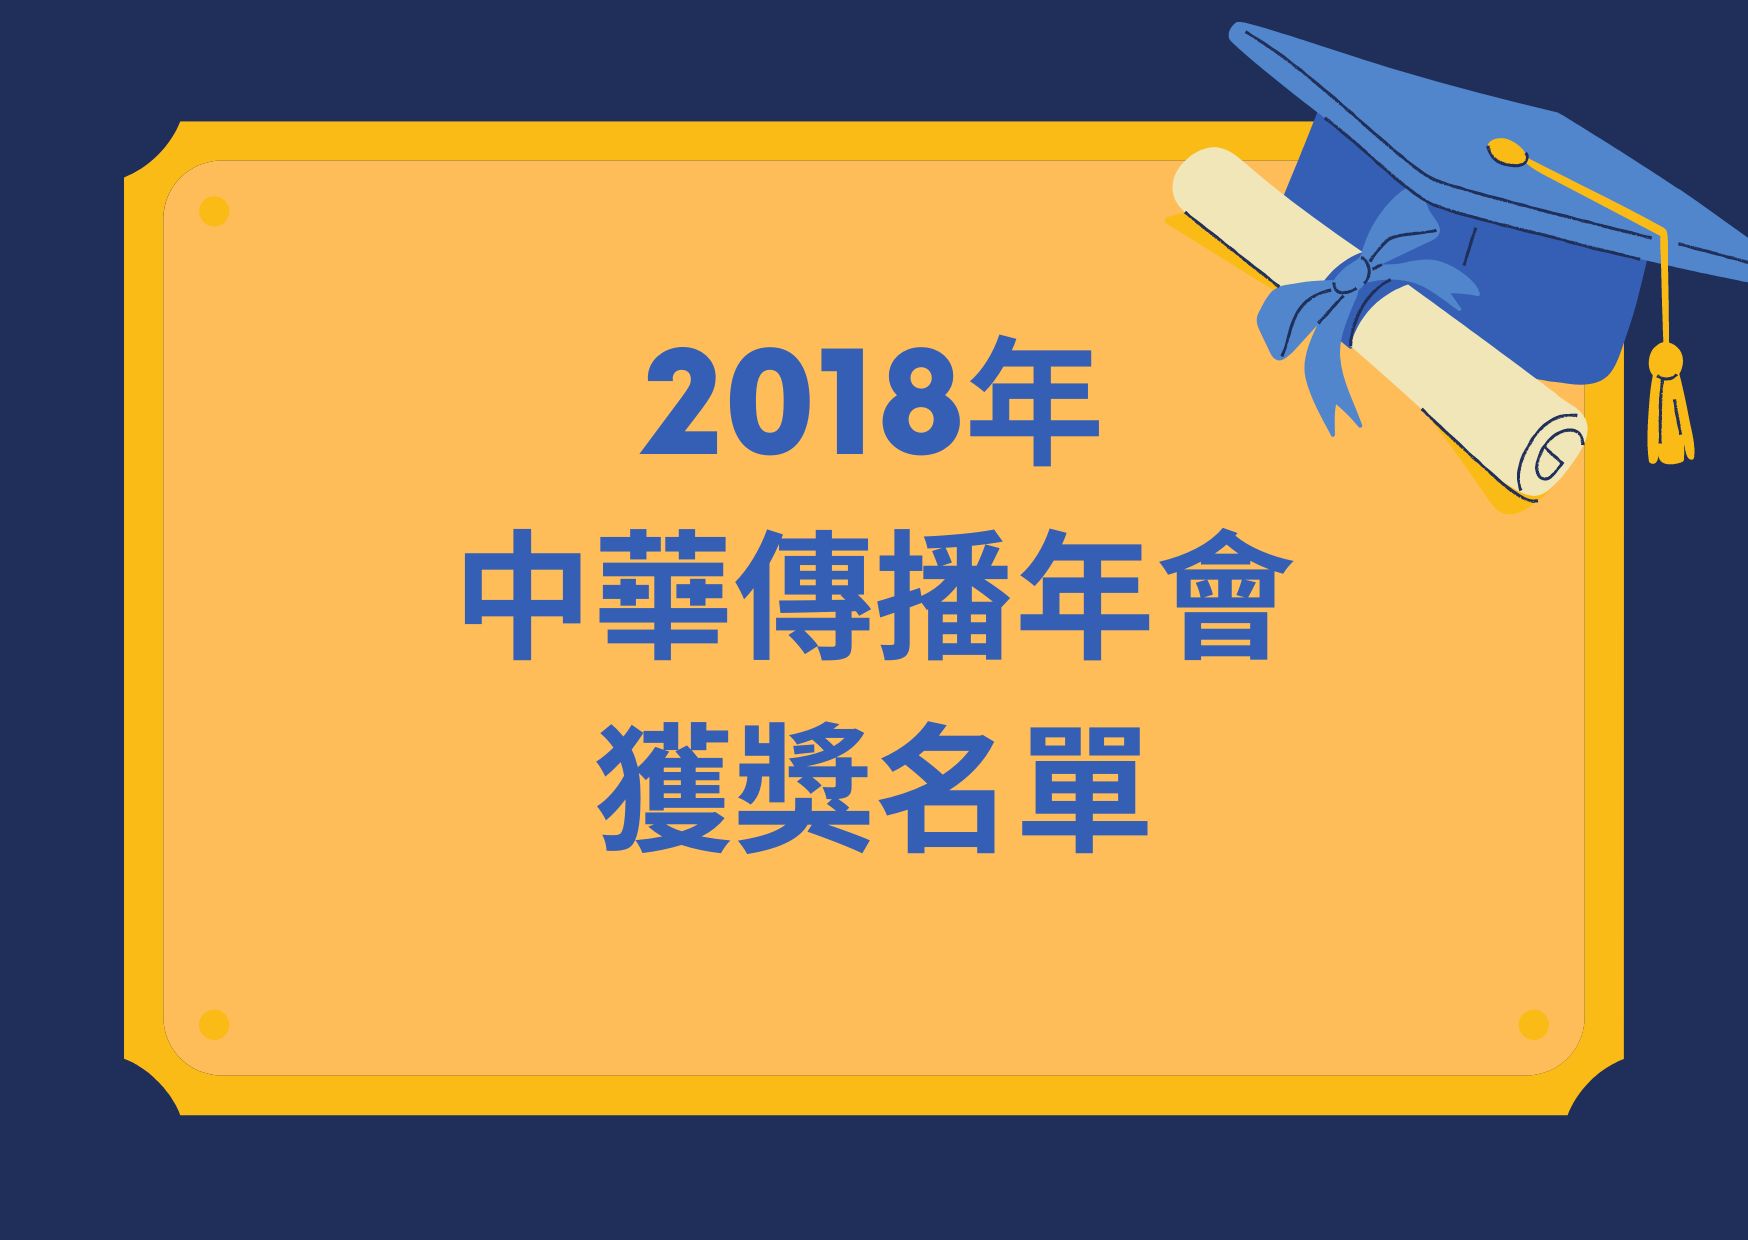 2018年中華傳播年會獲獎名單